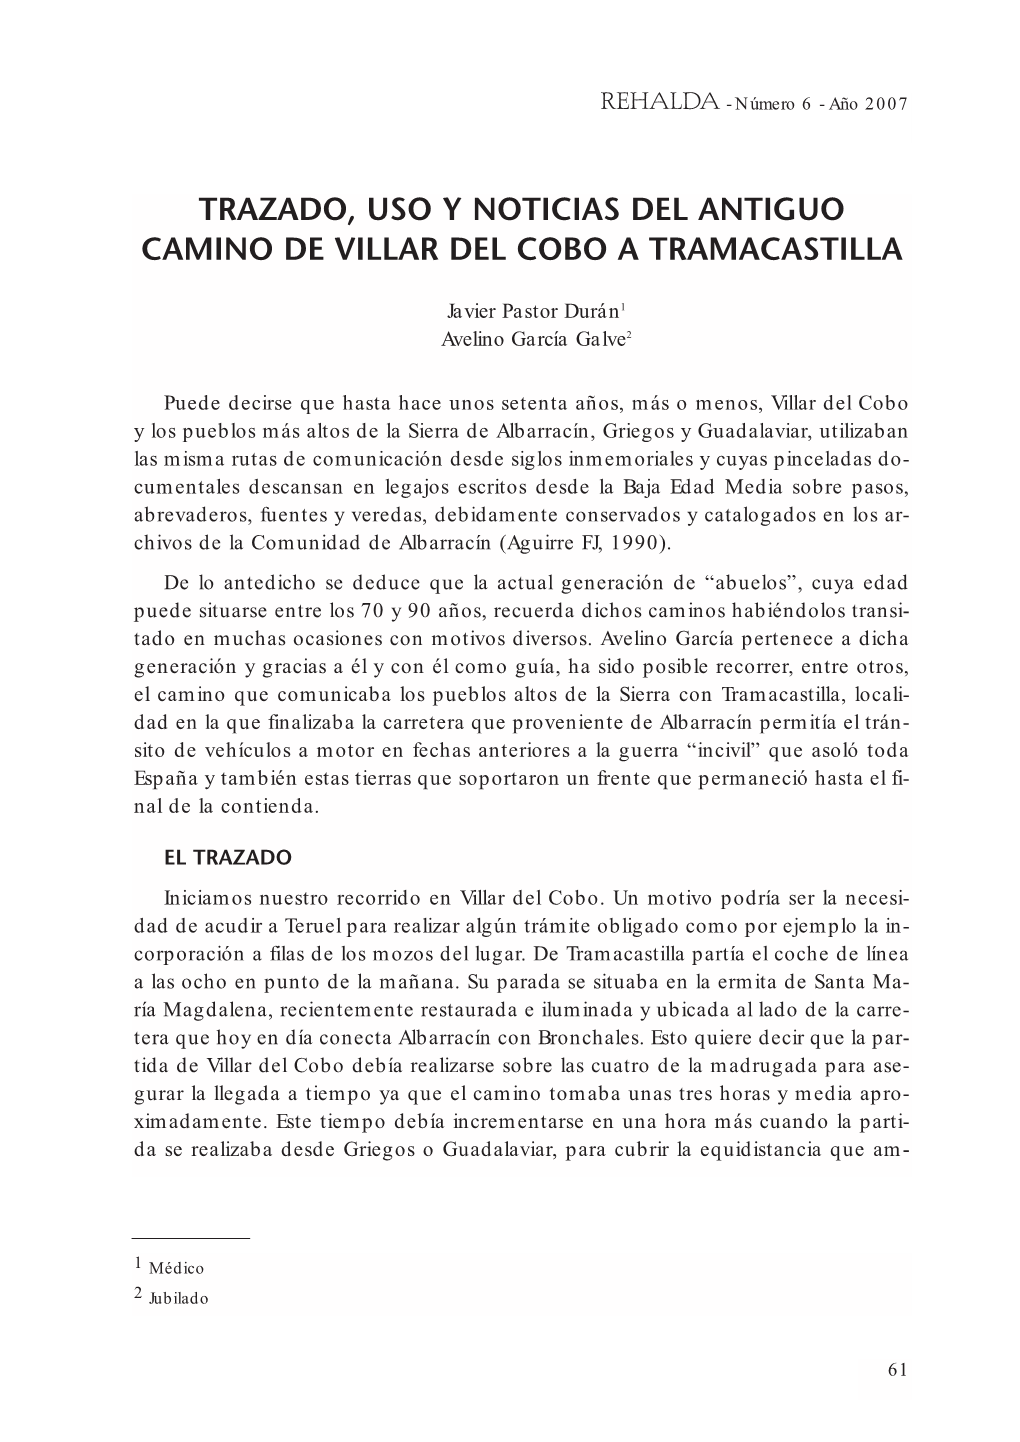 Trazado, Uso Y Noticias Del Antiguo Camino De Villar Del Cobo a Tramacastilla